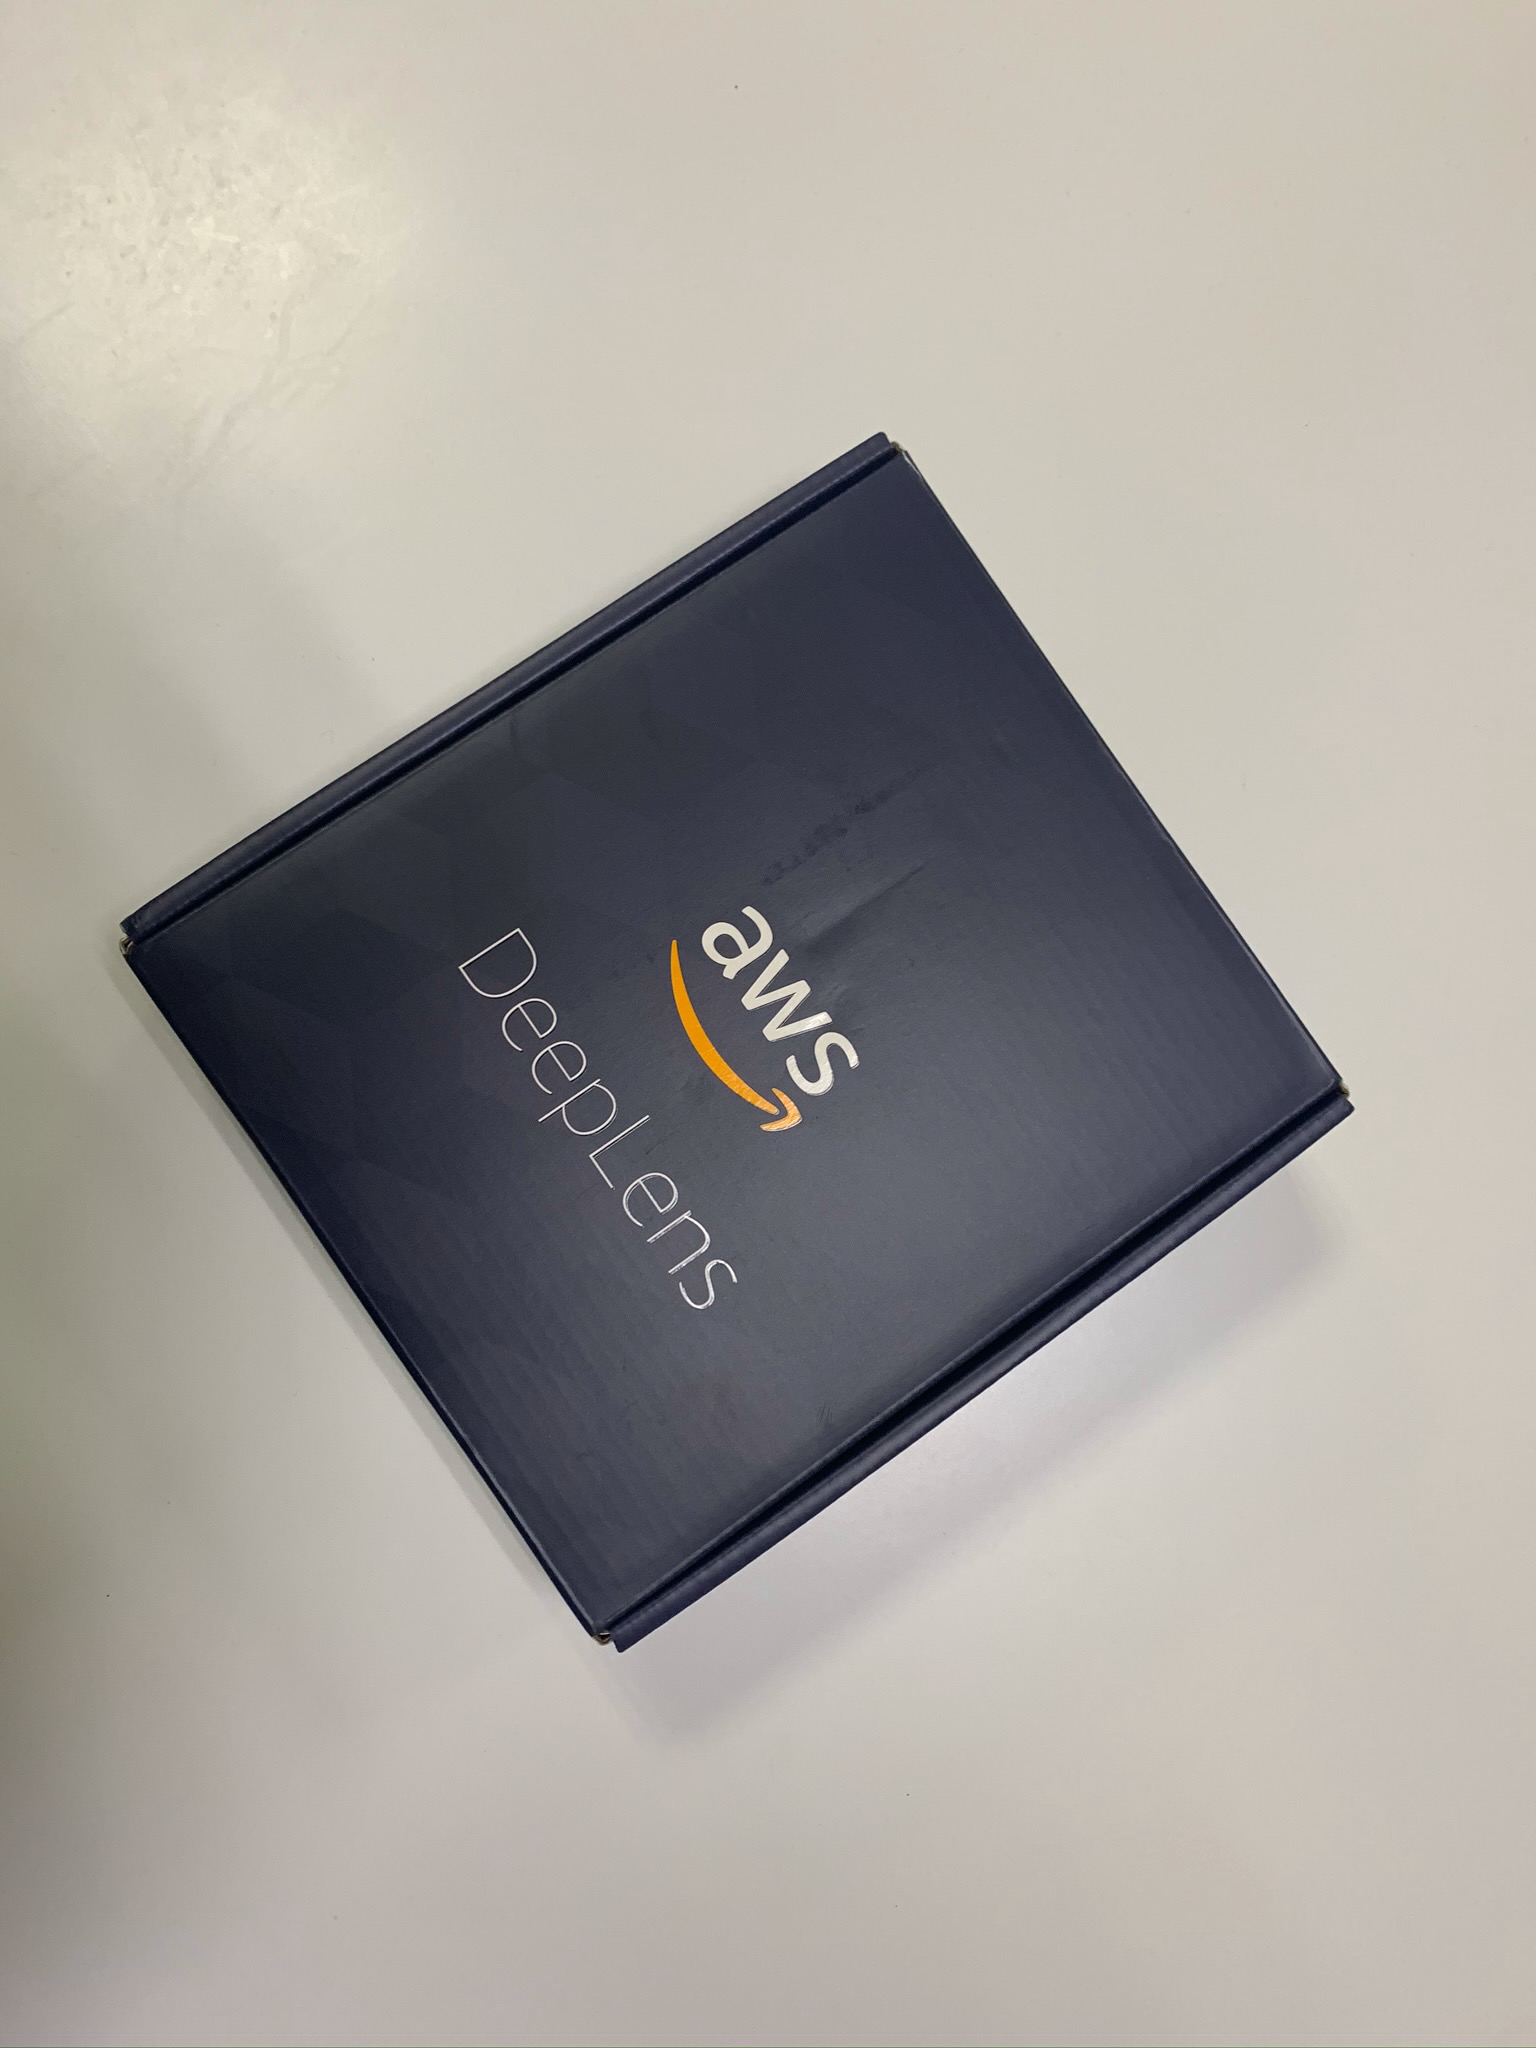 Камера Amazon DeepLens с глубоким обучением. Распаковка, подключение и развертывание проекта - 3